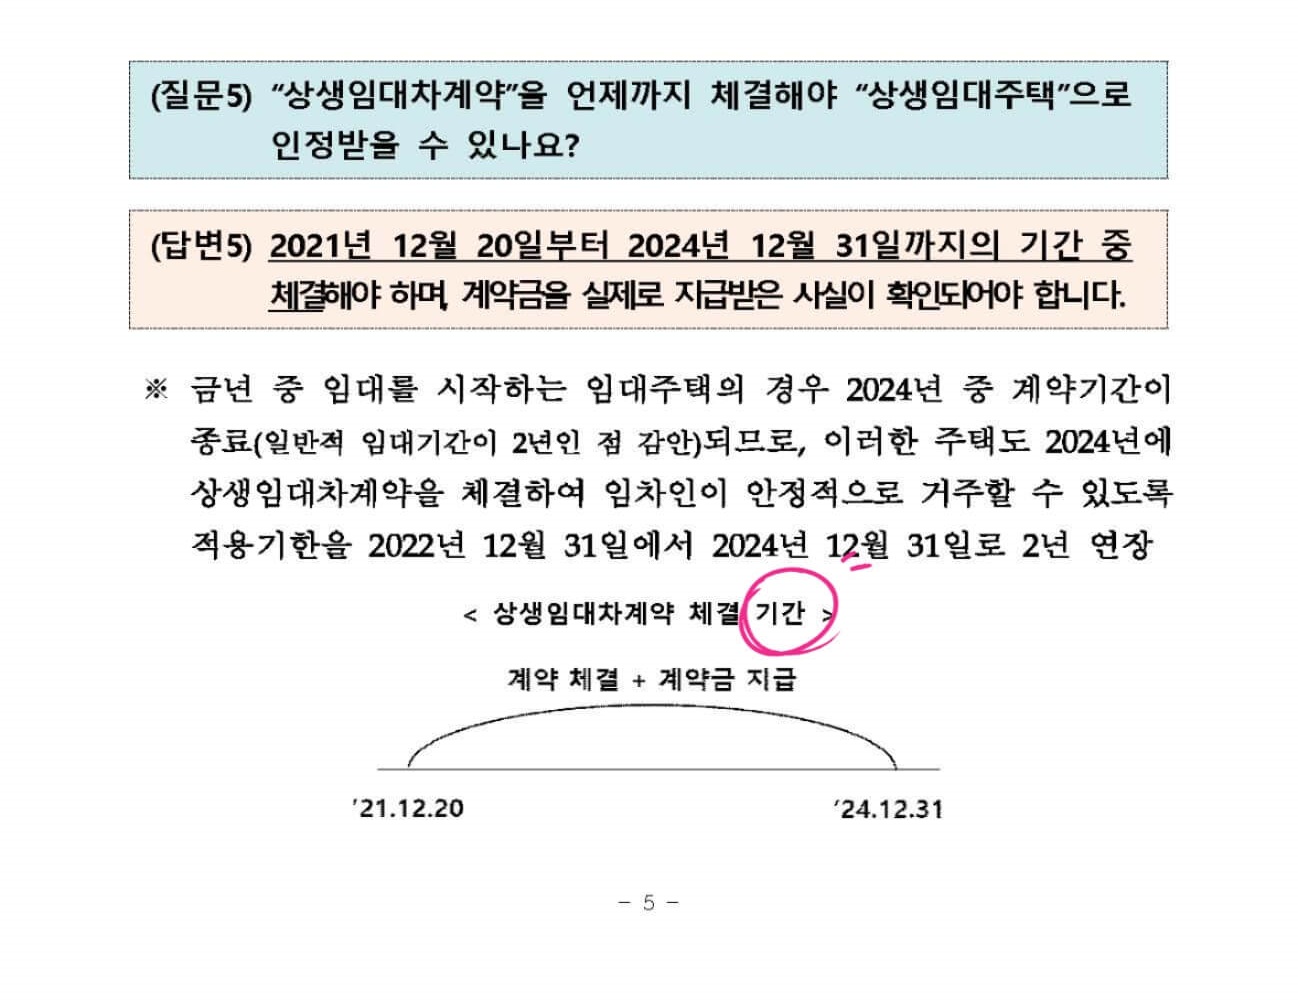 2022.6.24. 기획재정부 보도참고자료5